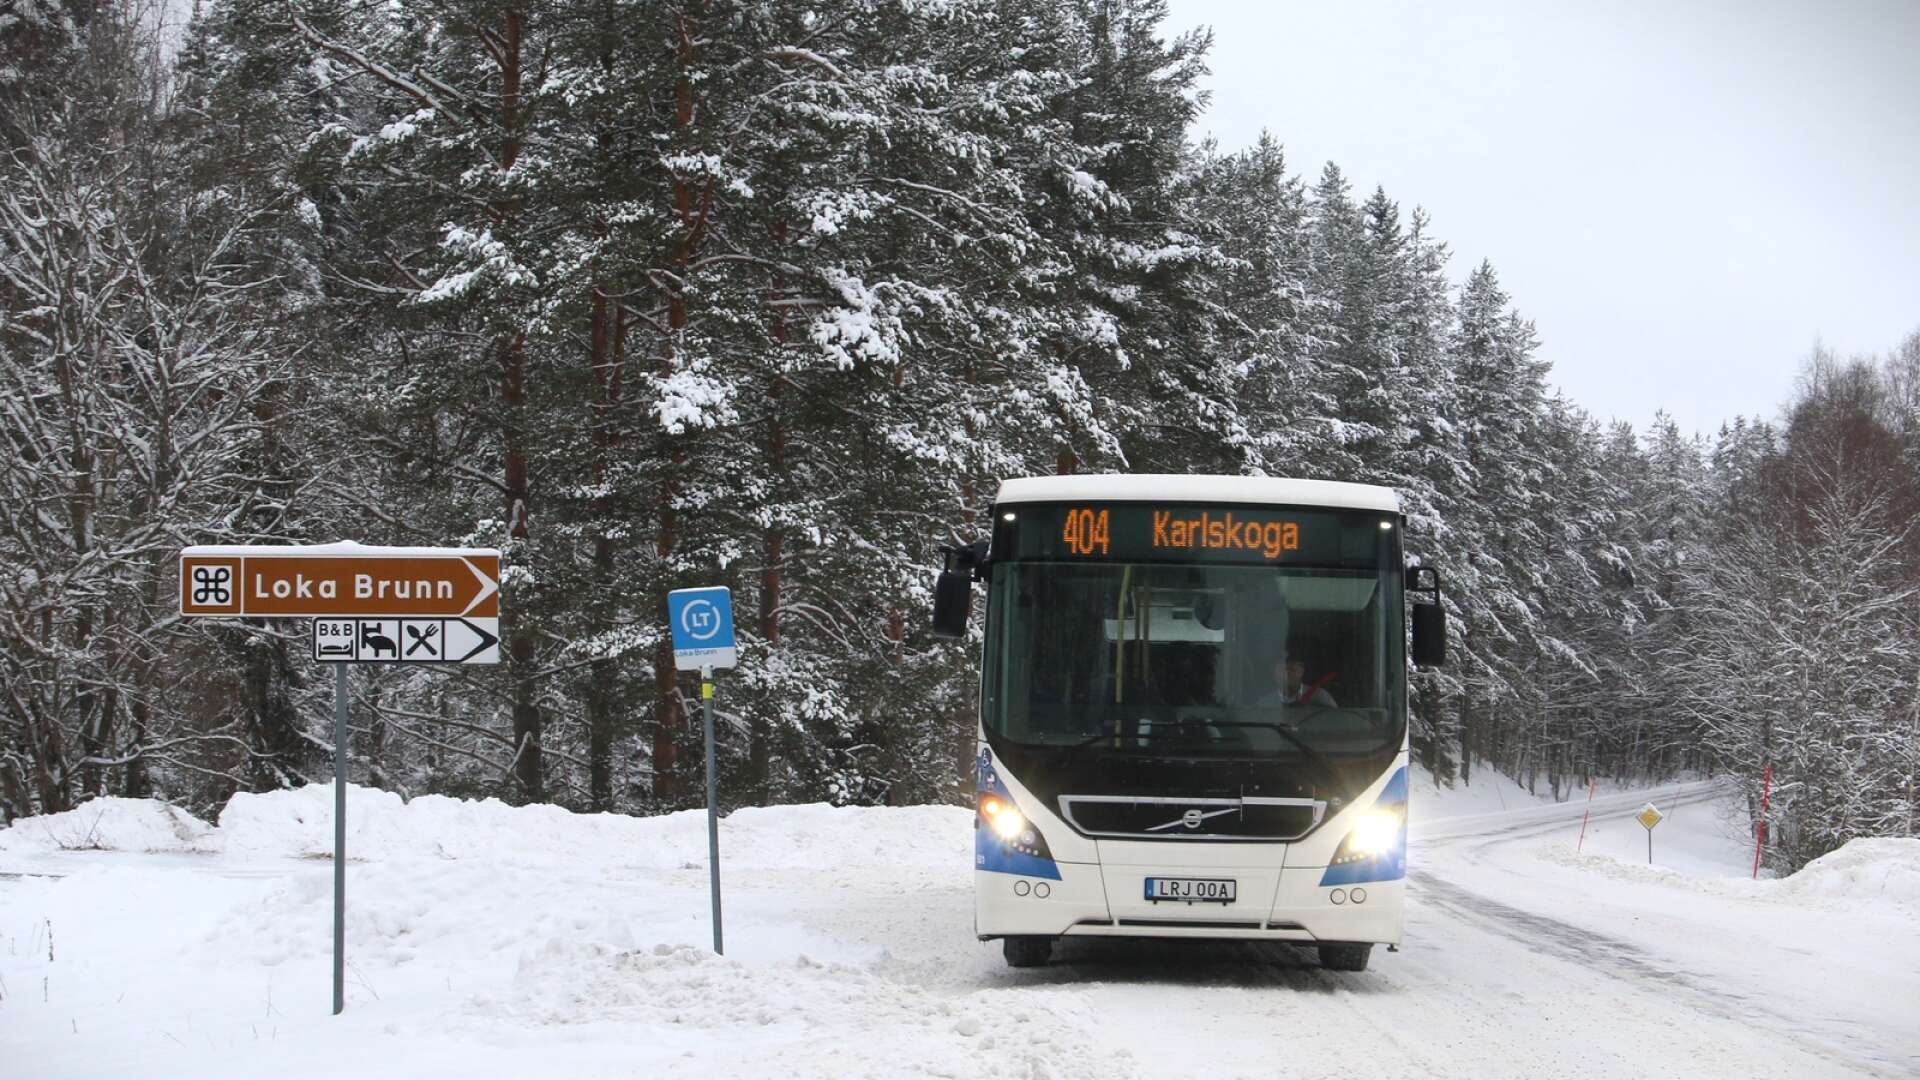 Region Örebro läns beslut att ta bort busslinje 404 mellan Hällefors och Karlskoga påverkar såväl ungdomar på orterna som medarbetare och gäster på Loka Brunn.